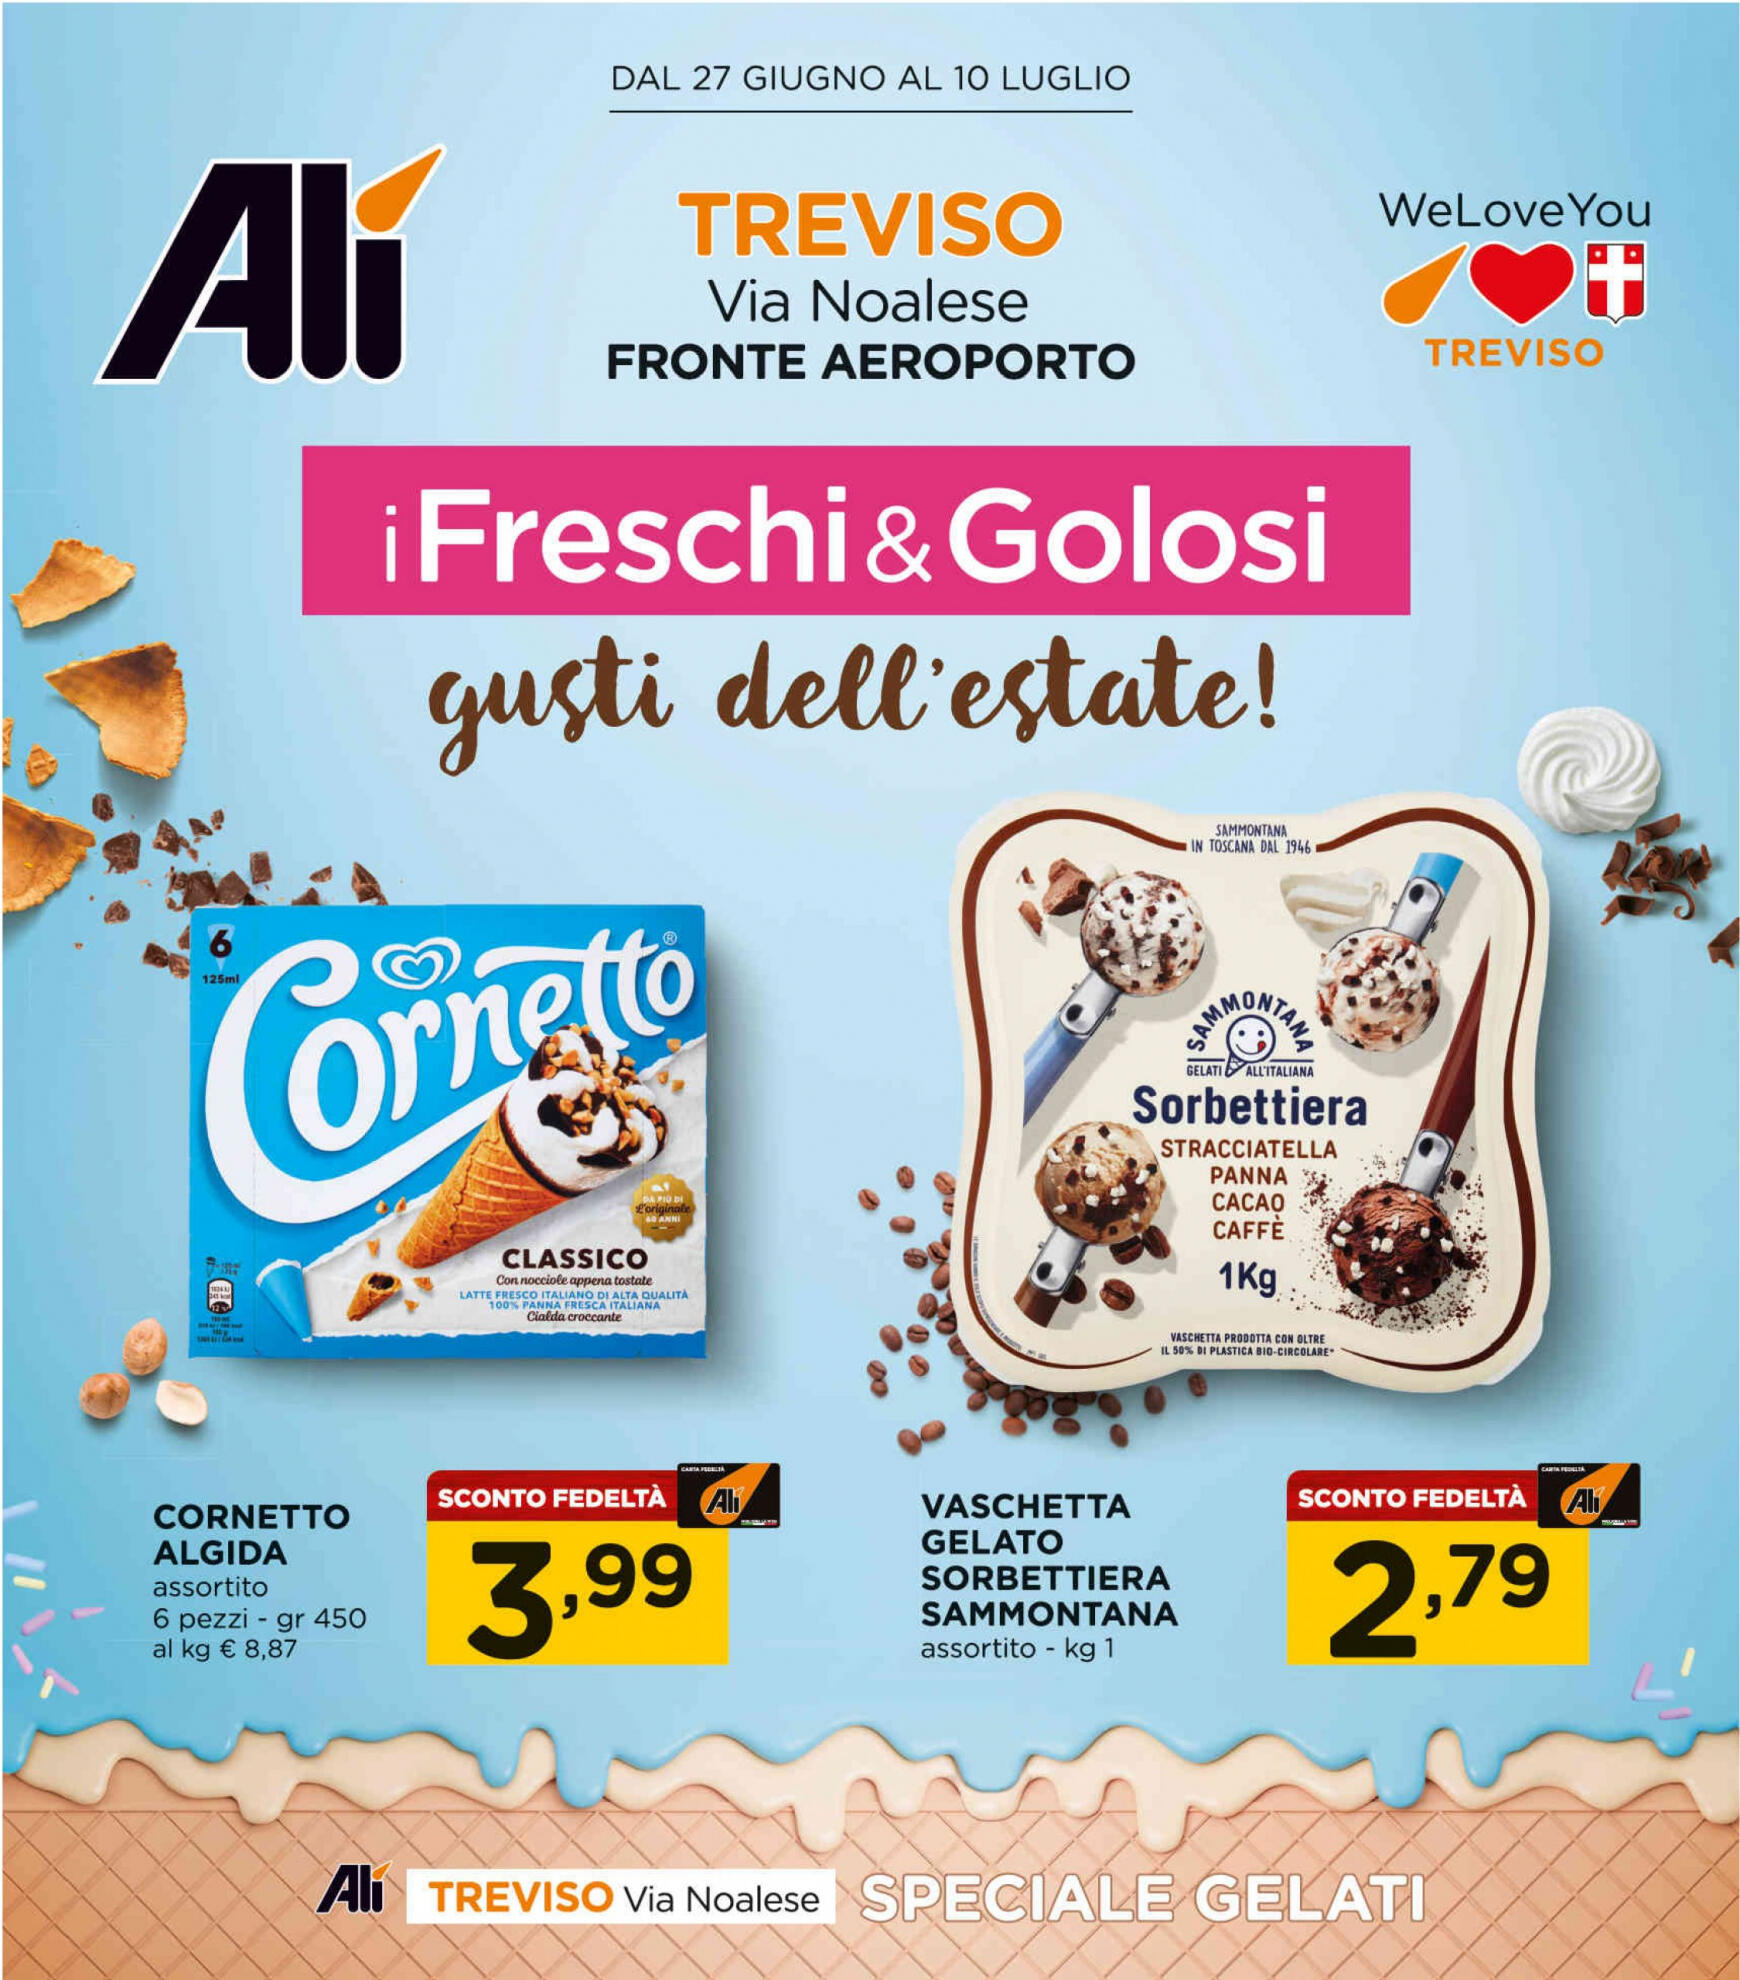 ali-aliper - Nuovo volantino Ali - Speciale gelati 27.06. - 10.07.